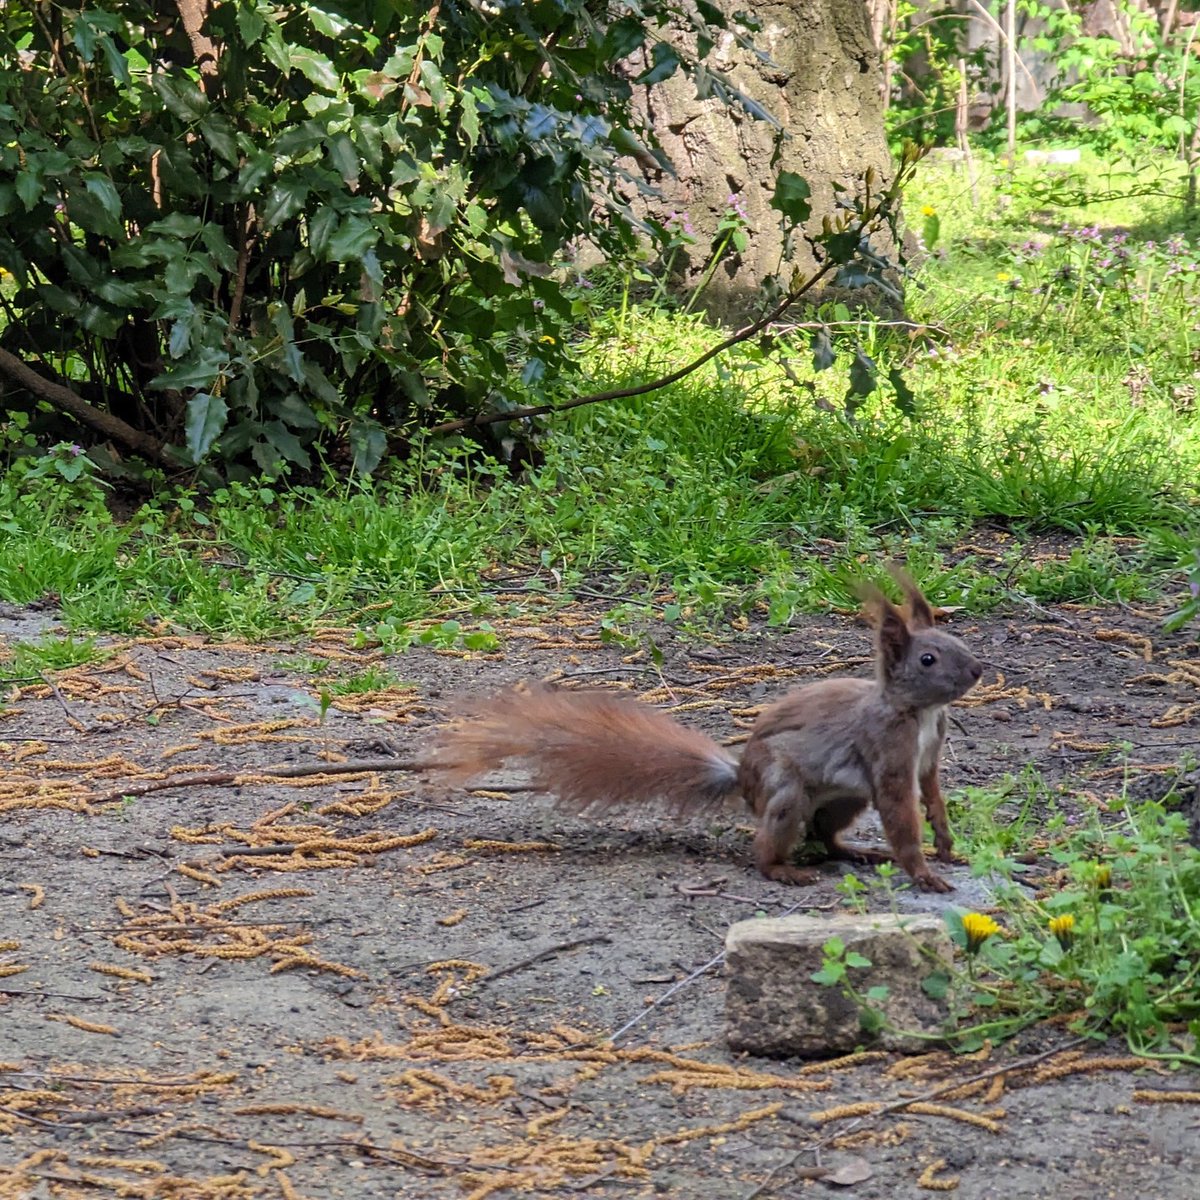 Unsere #Hörnchen posen gerne im #Sonnenschein und im ersten Bild wird ganz klar: Dies ist mein #Revier! Bitte #erhaltet meinen #Lebensraum und lasst die #Bäume stehen!

#marchi40erhalten
#Eichhörnchen #meineHood #meinRevier #cuteanimals #cutesquirrel #Naturerhalt
#Fellwechsel…